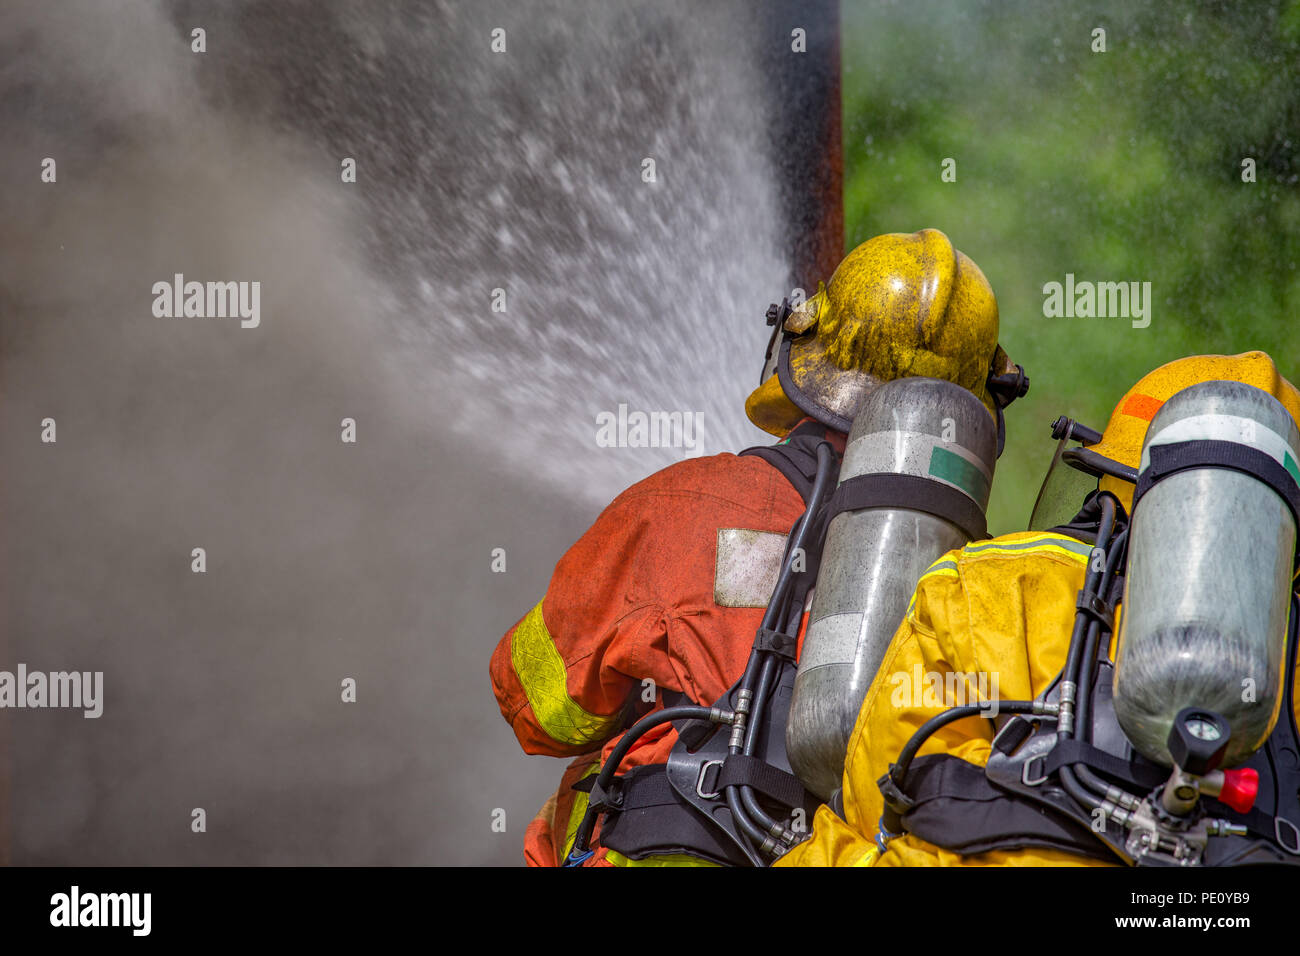 La acción de cierre de dos bomberos de pulverización de agua de alta presión por la boquilla al fuego y humo, con espacio de copia Foto de stock